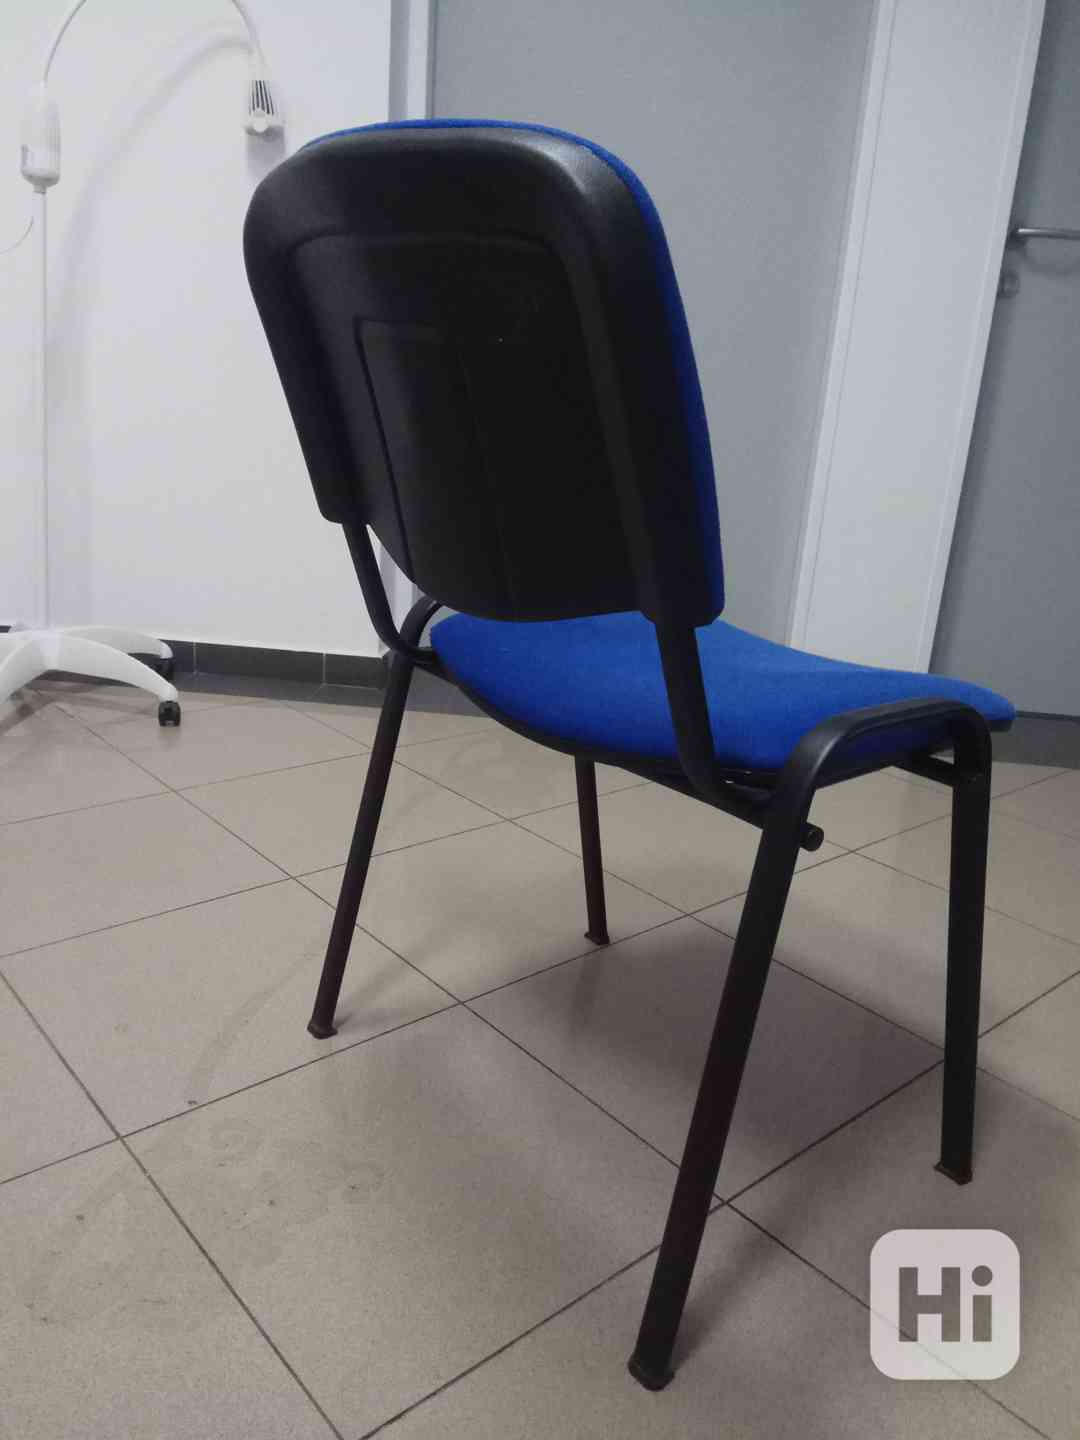 prodej židlí - foto 1